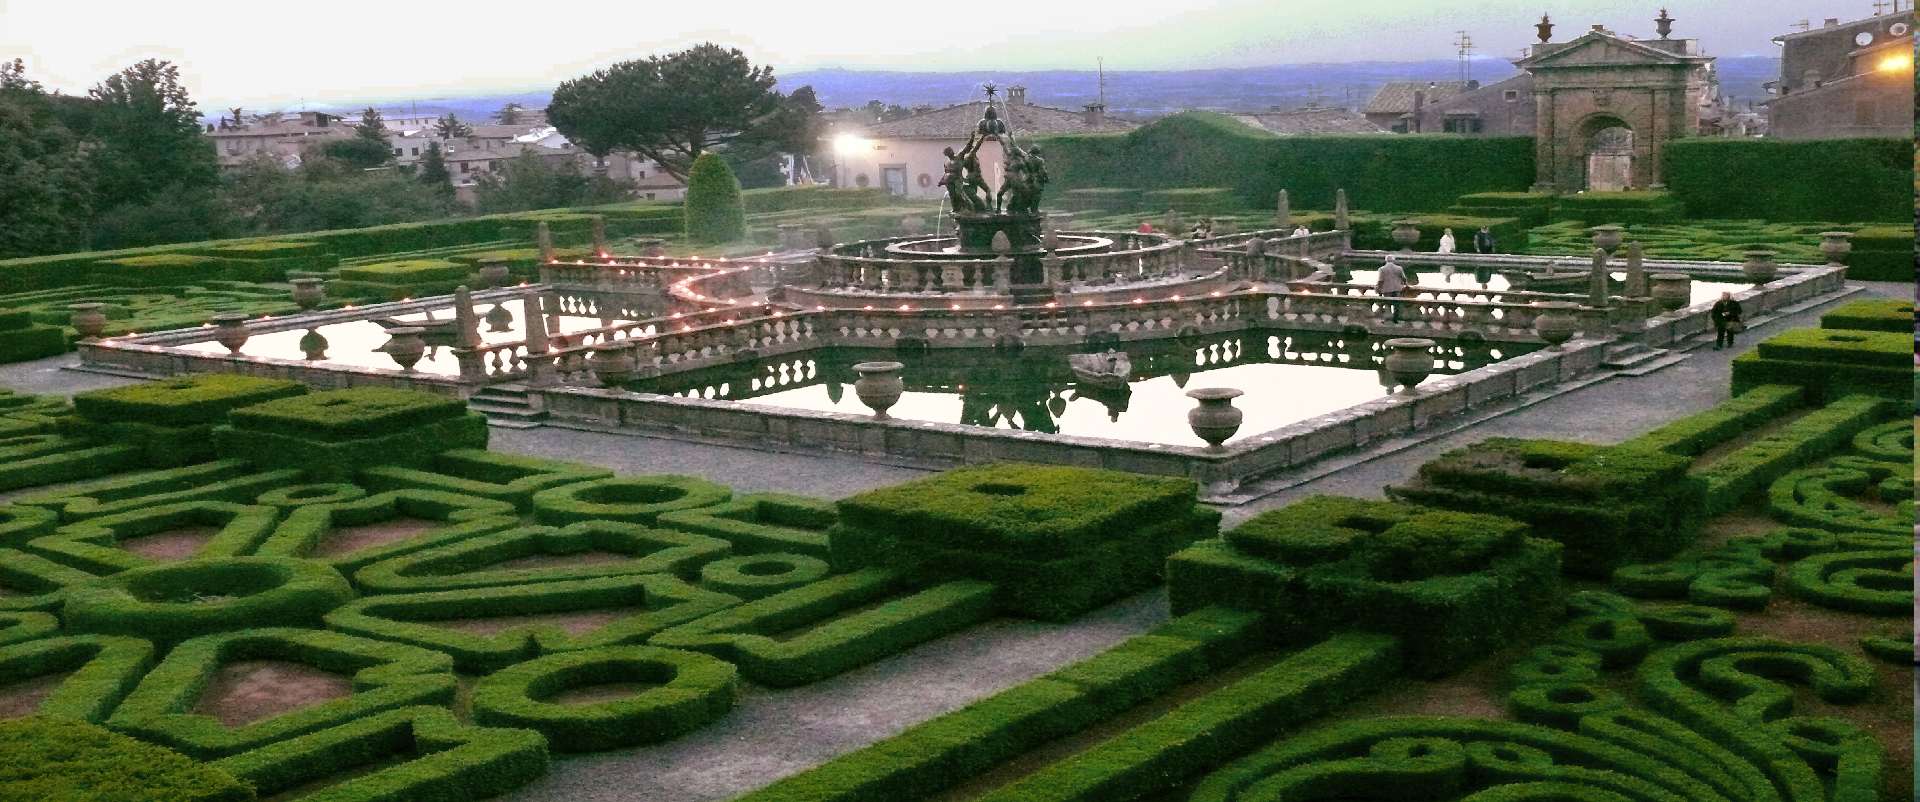 Villa Lante - VT - Il giardino Quadrato dalla palazzina Montalto